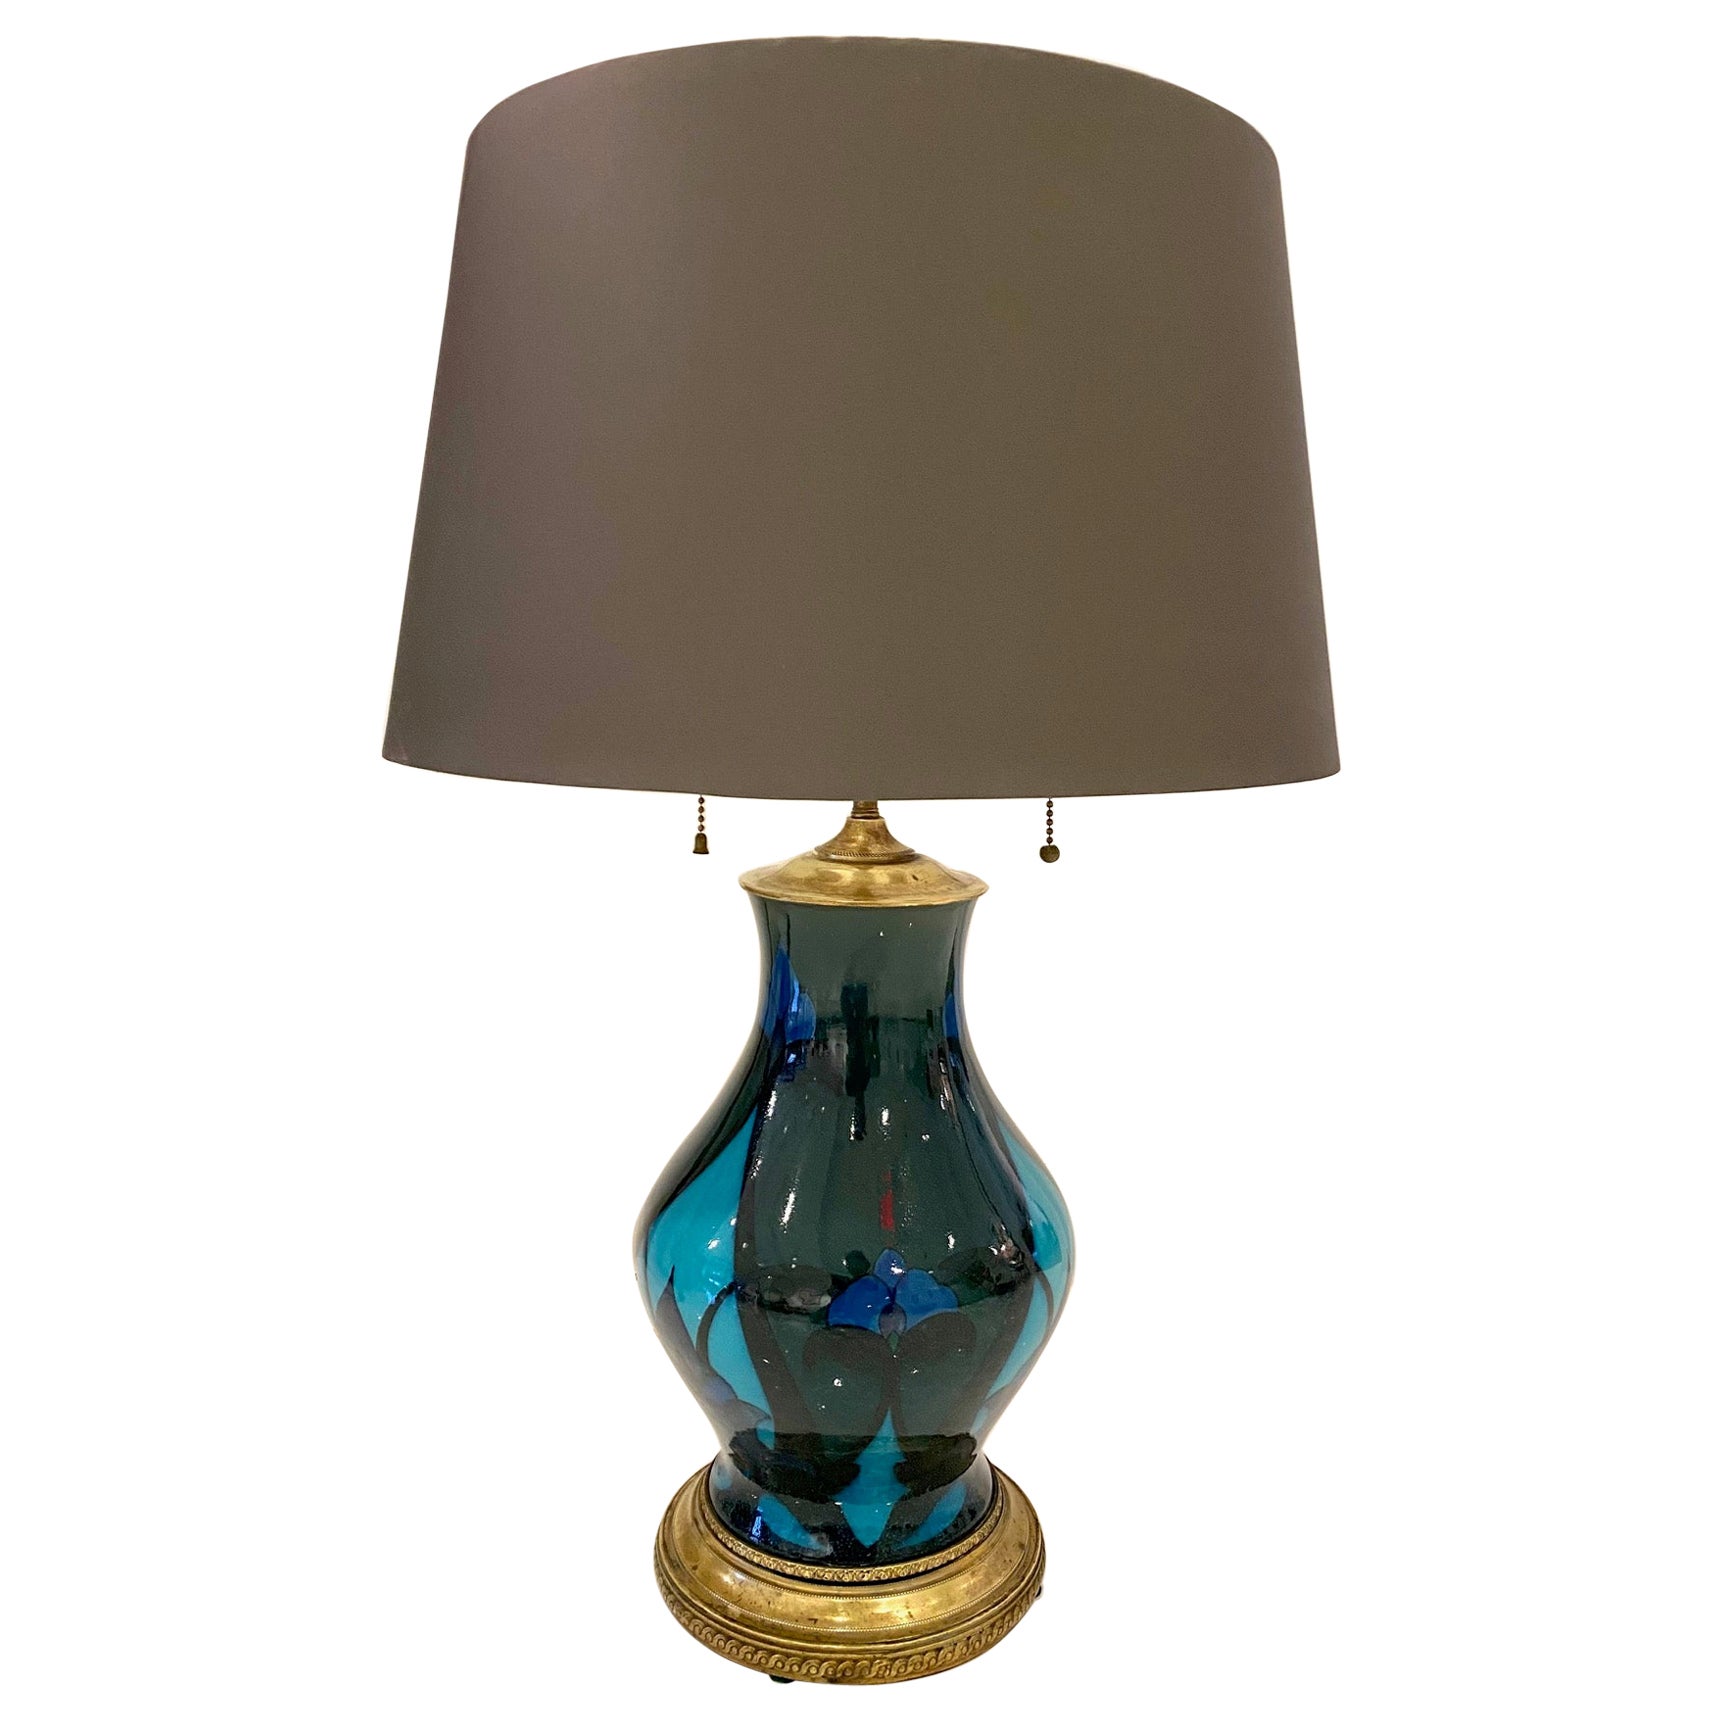 Art Nouveau Period Rock Wood Pottery Lamp For Sale